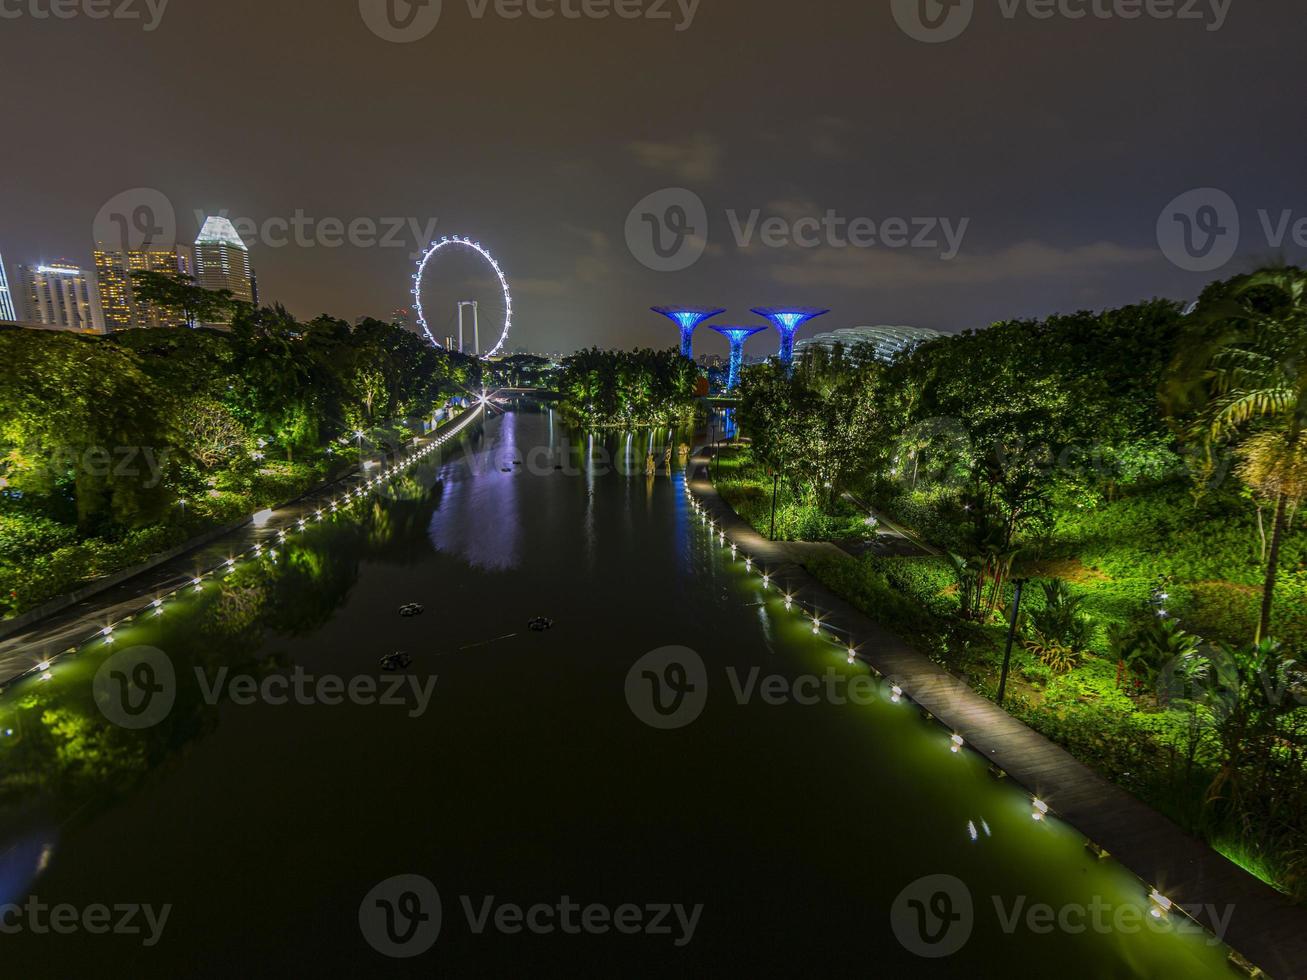 imagen de jardines junto al parque de la bahía en singapur durante la noche en septiembre foto